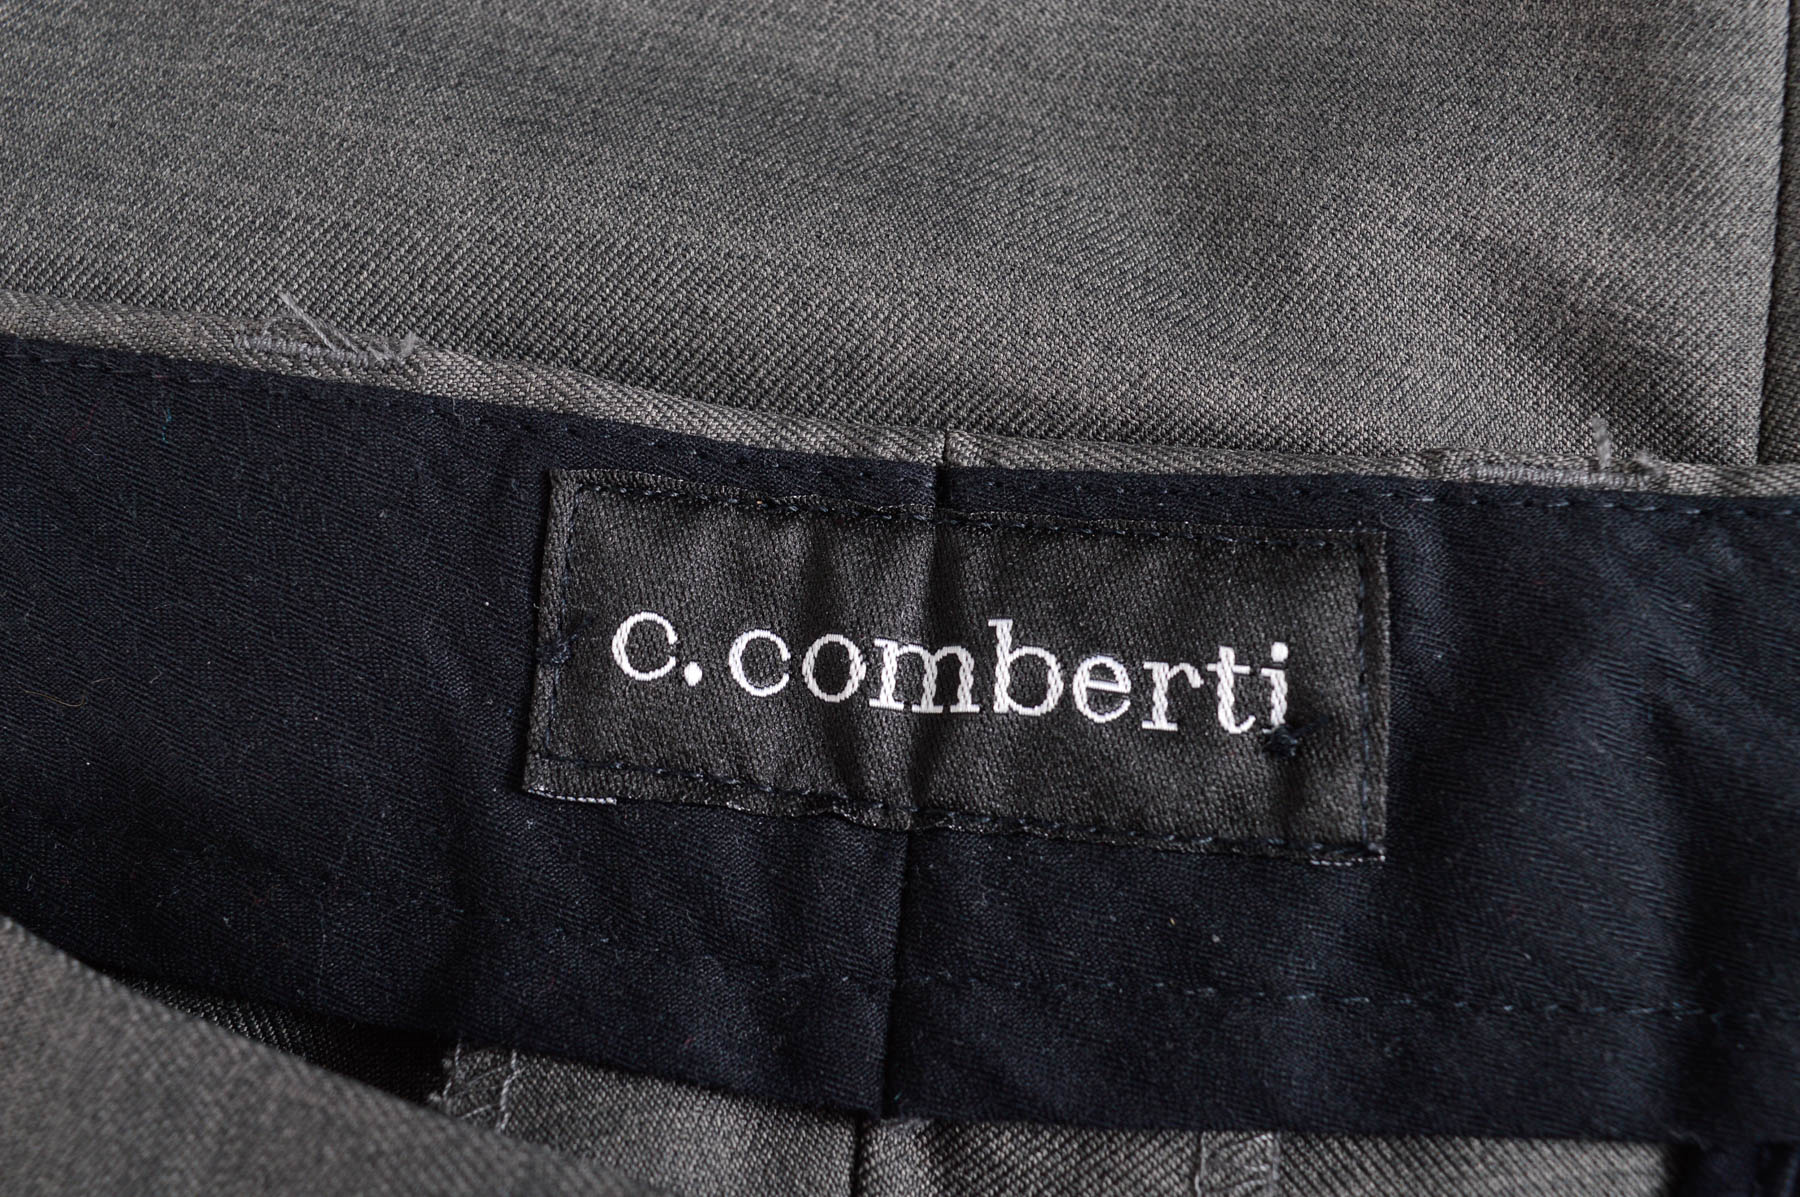 Men's trousers - C.Comberti - 2